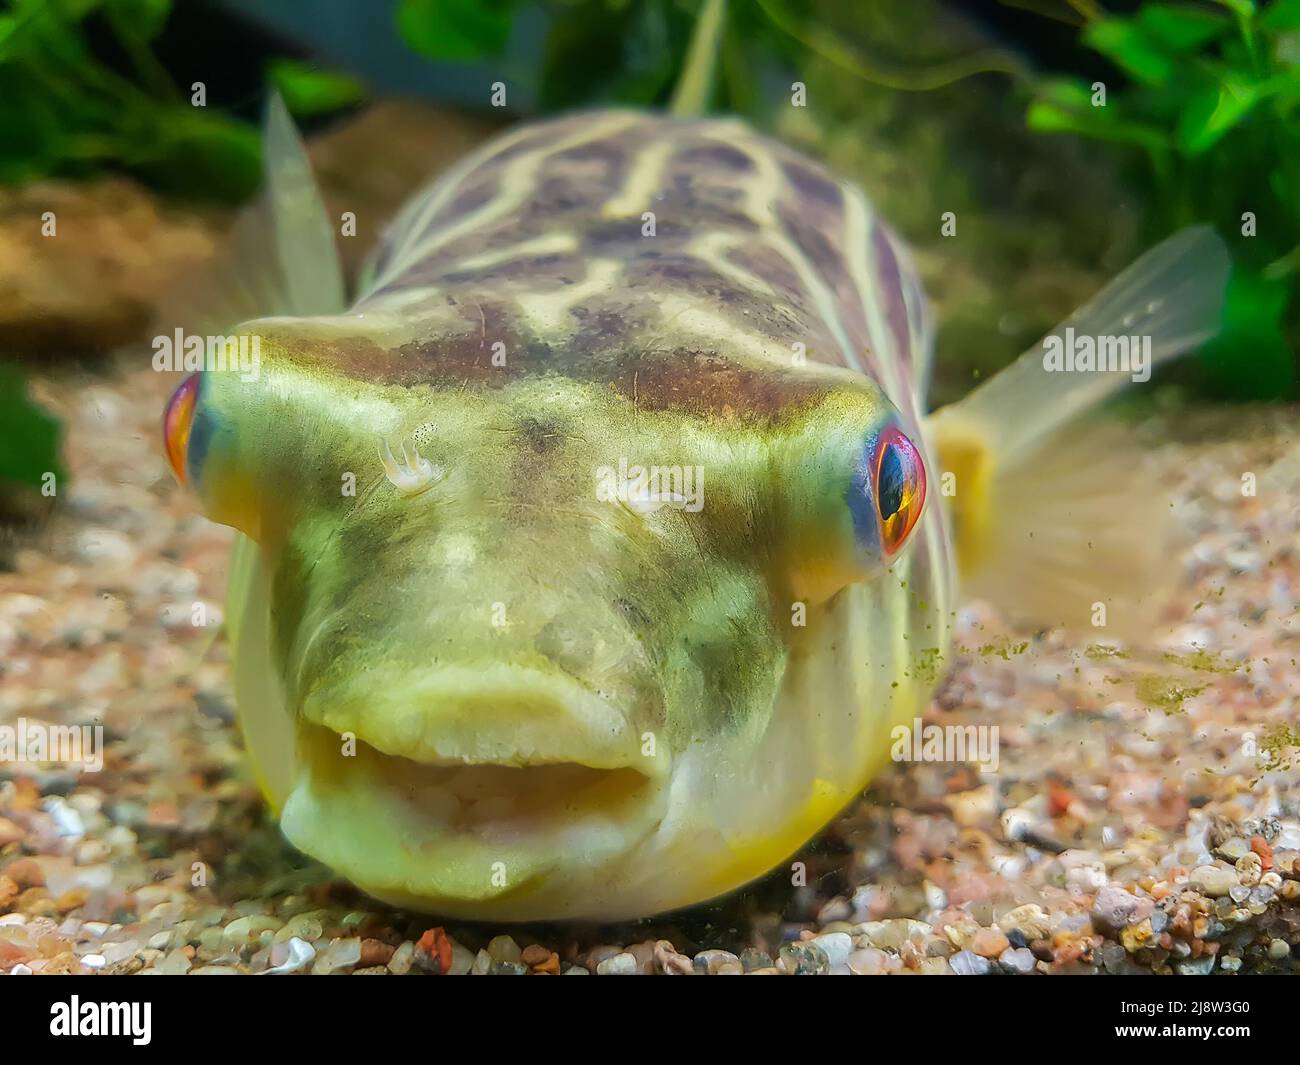 Exotic funny aquarium fish Stock Photo